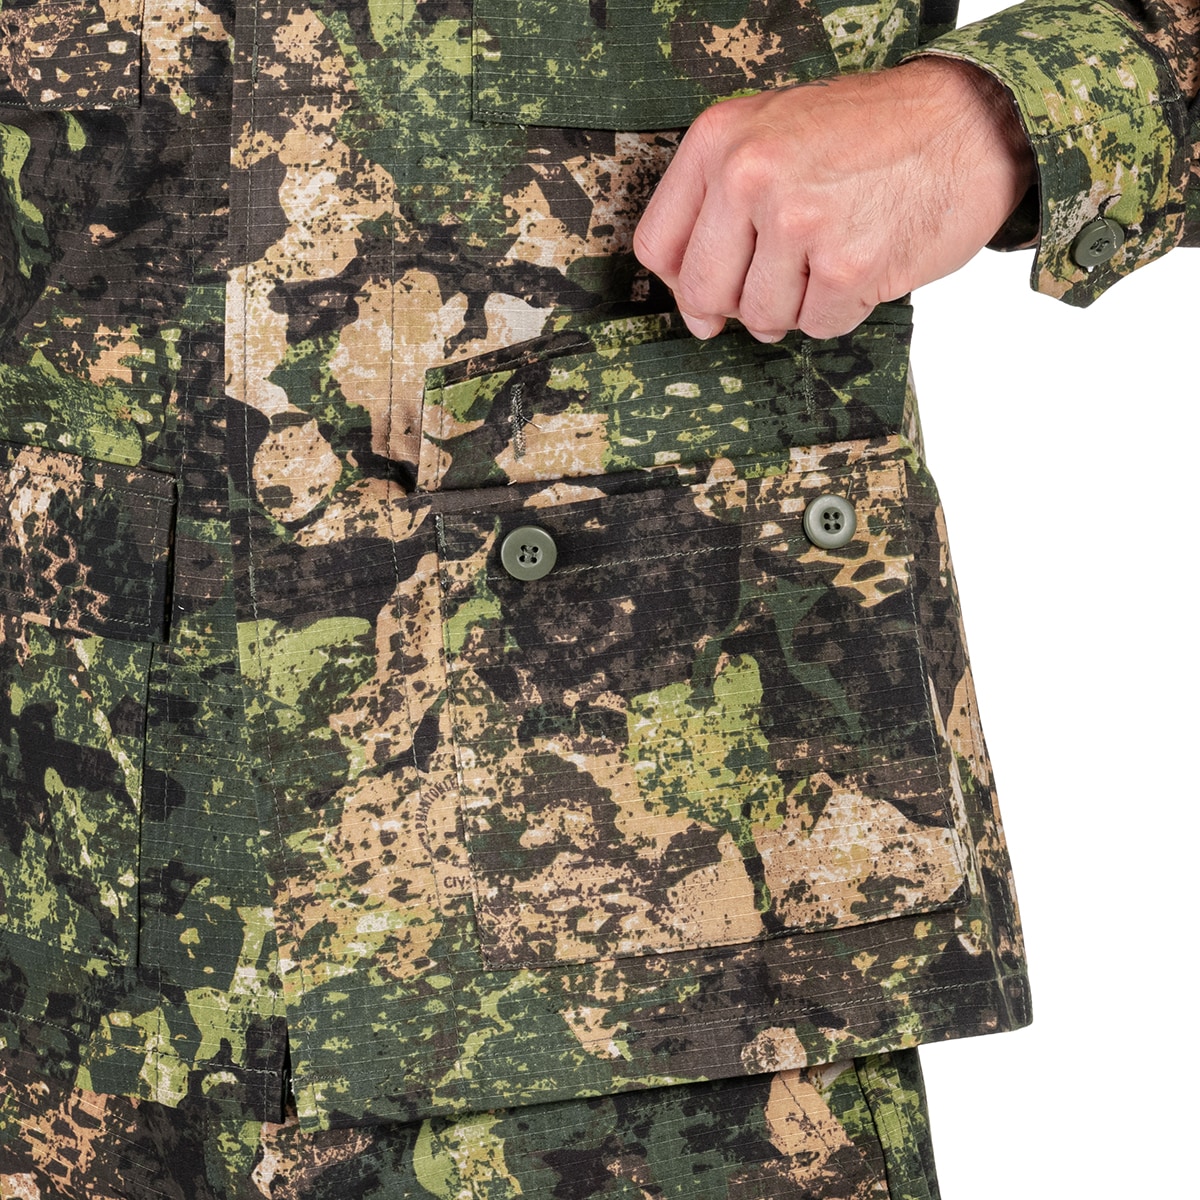 Bluza wojskowa Mil-Tec BDU Rip-Stop - Phantomleaf WASP I Z3A